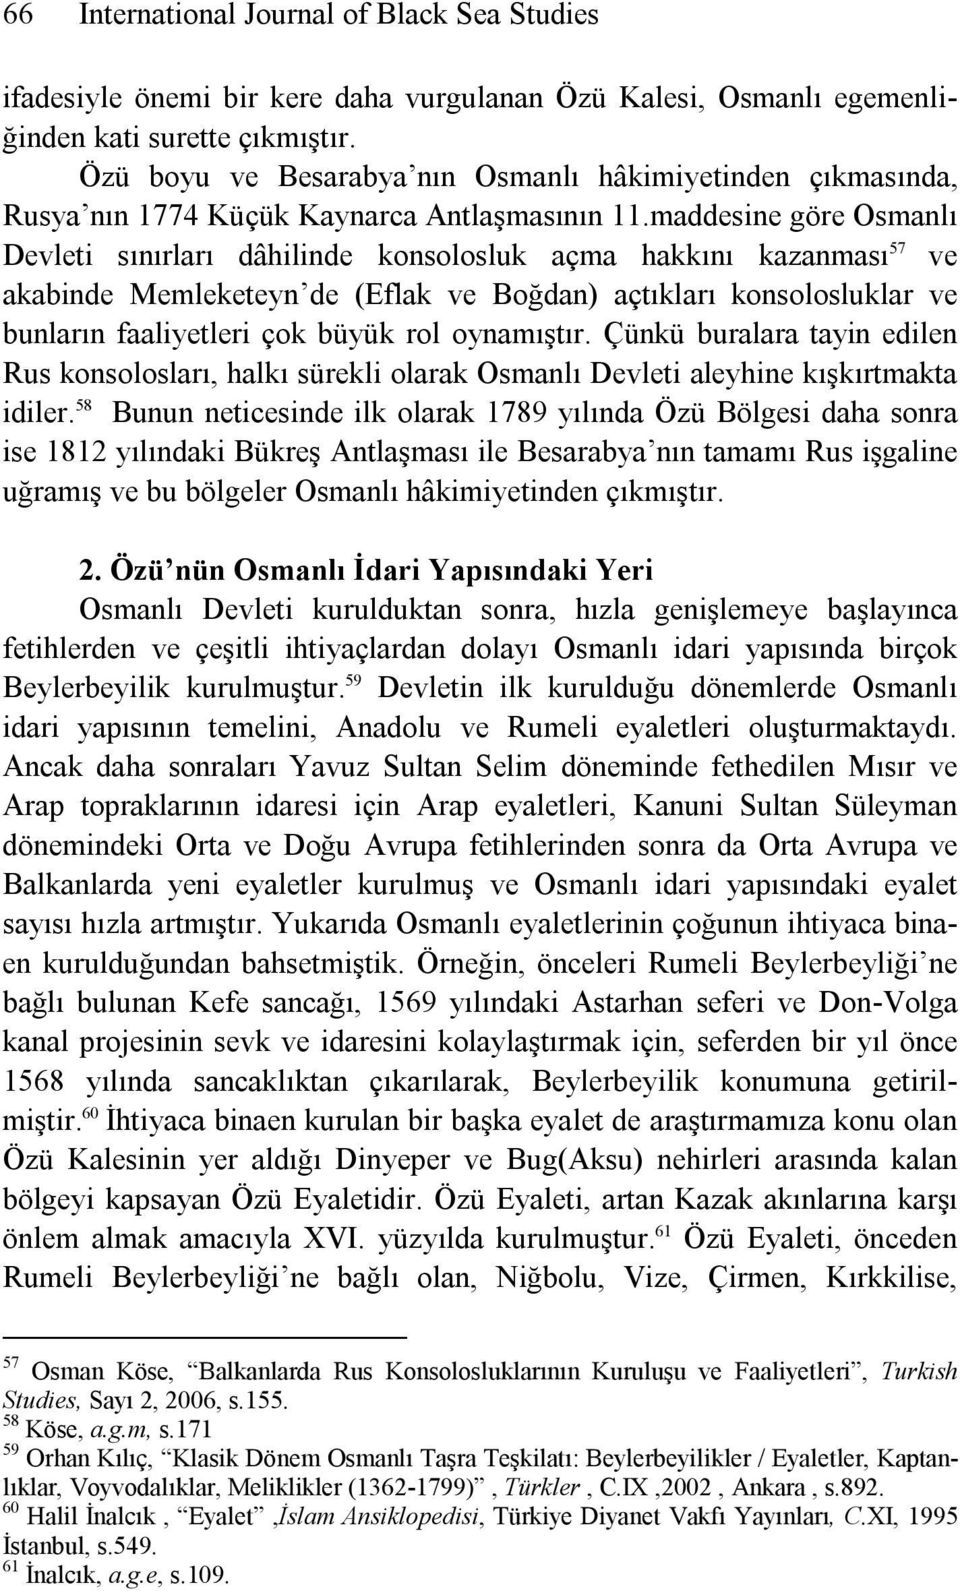 maddesine göre Osmanlı Devleti sınırları dâhilinde konsolosluk açma hakkını kazanması 57 ve akabinde Memleketeyn de (Eflak ve Boğdan) açtıkları konsolosluklar ve bunların faaliyetleri çok büyük rol